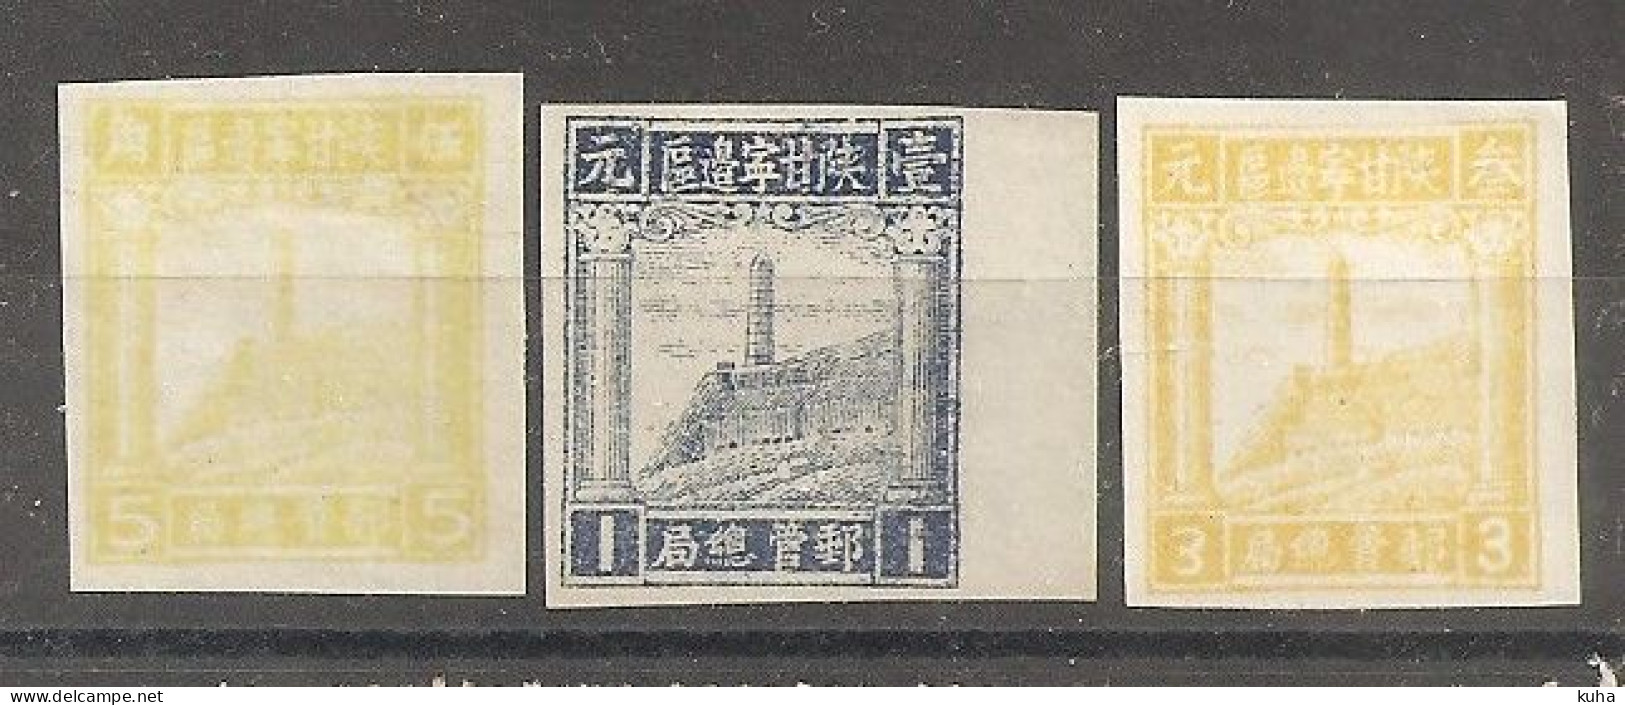 China Chine 1949 North China MvLH - Unused Stamps